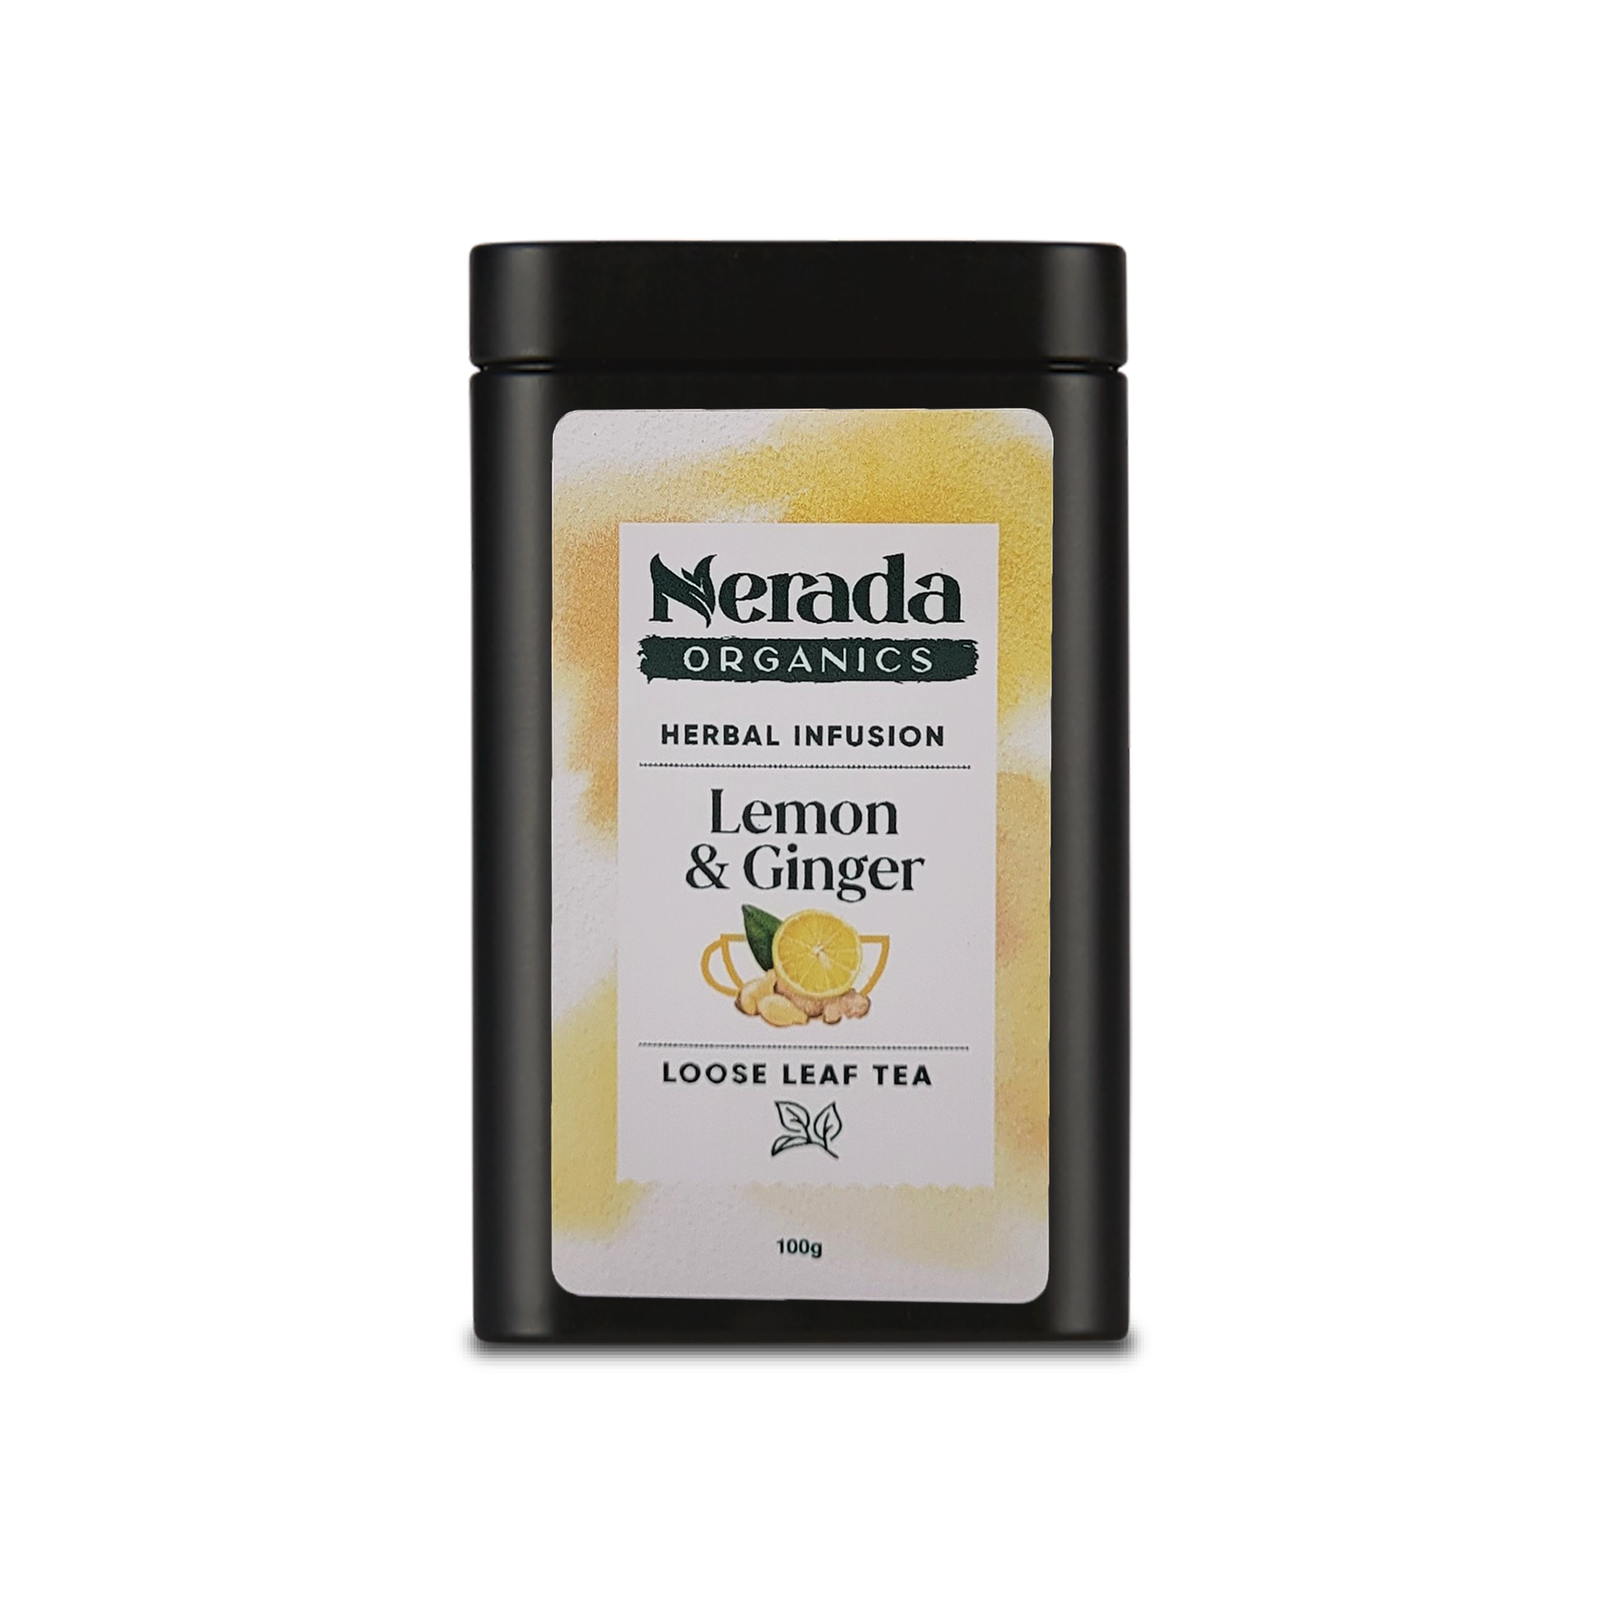 Lemon & Ginger Organic Tea Loose Leaf 100g Tin